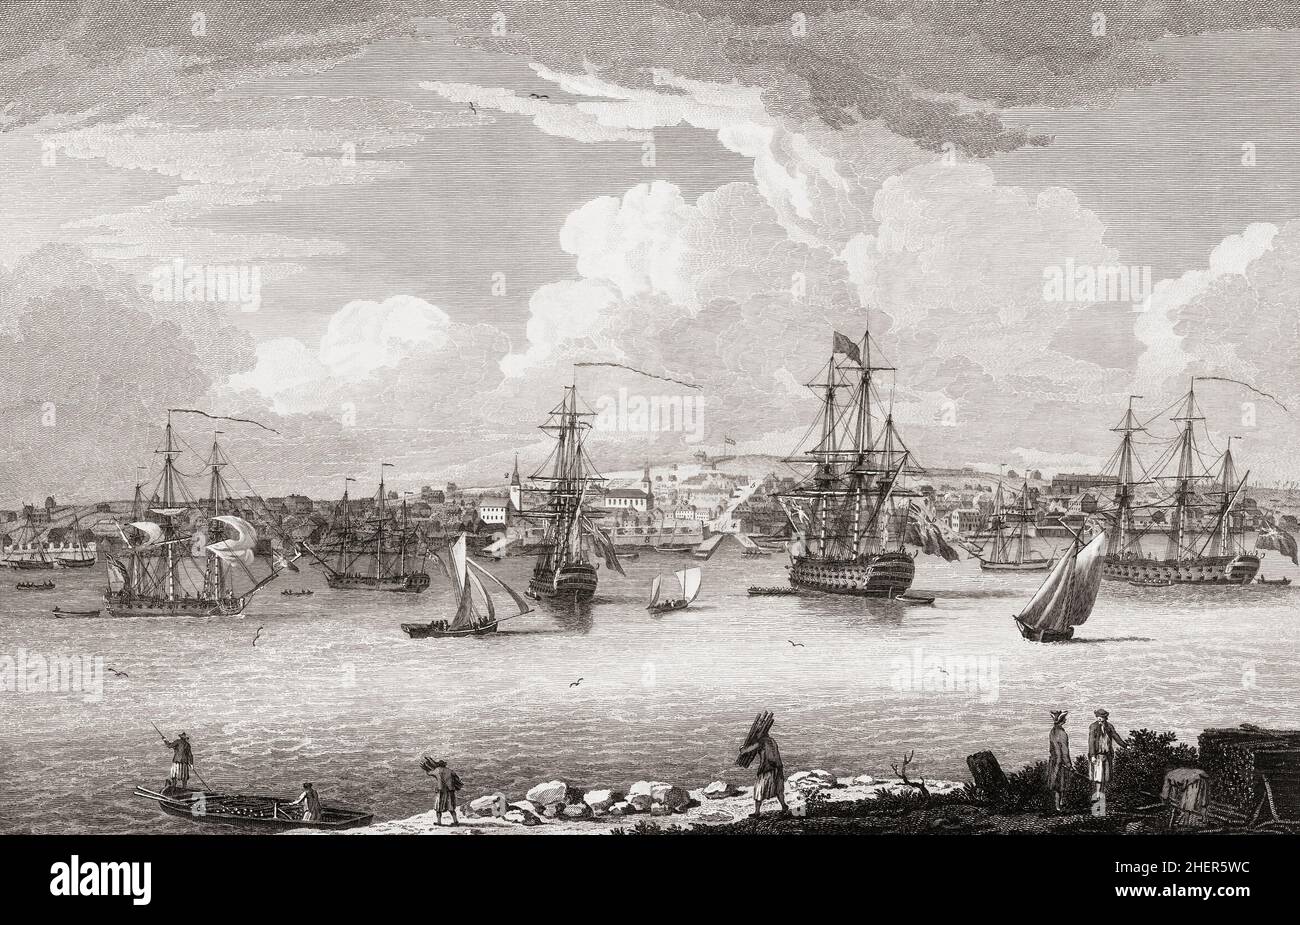 Ville et port de Halifax, Nouvelle-Écosse, Canada au siècle 18th.Après une œuvre de Dominic Serres. Banque D'Images